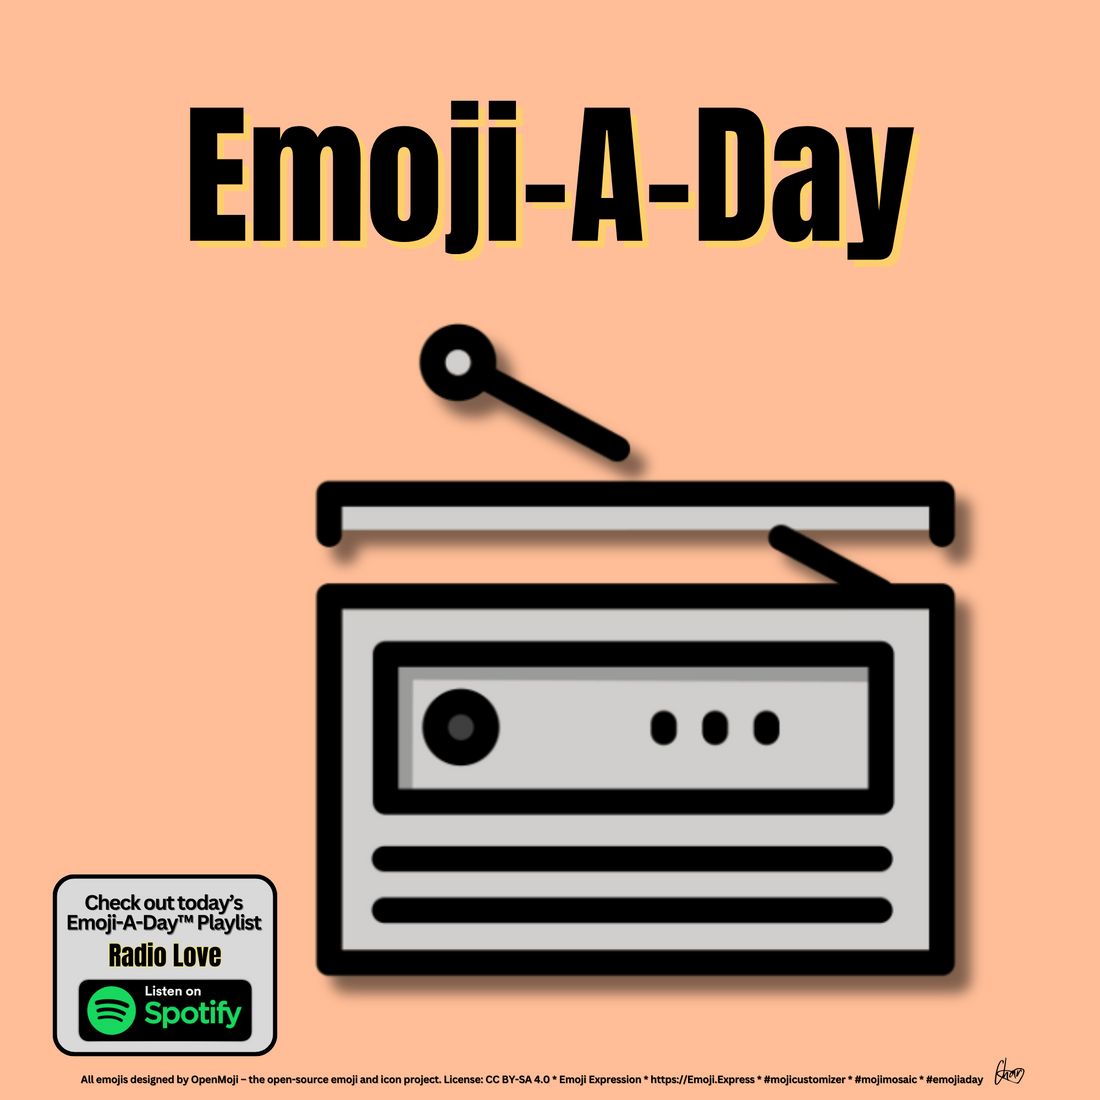 Emoij-A-Day theme with Radio emoji and Radio Love Spotify Playlist